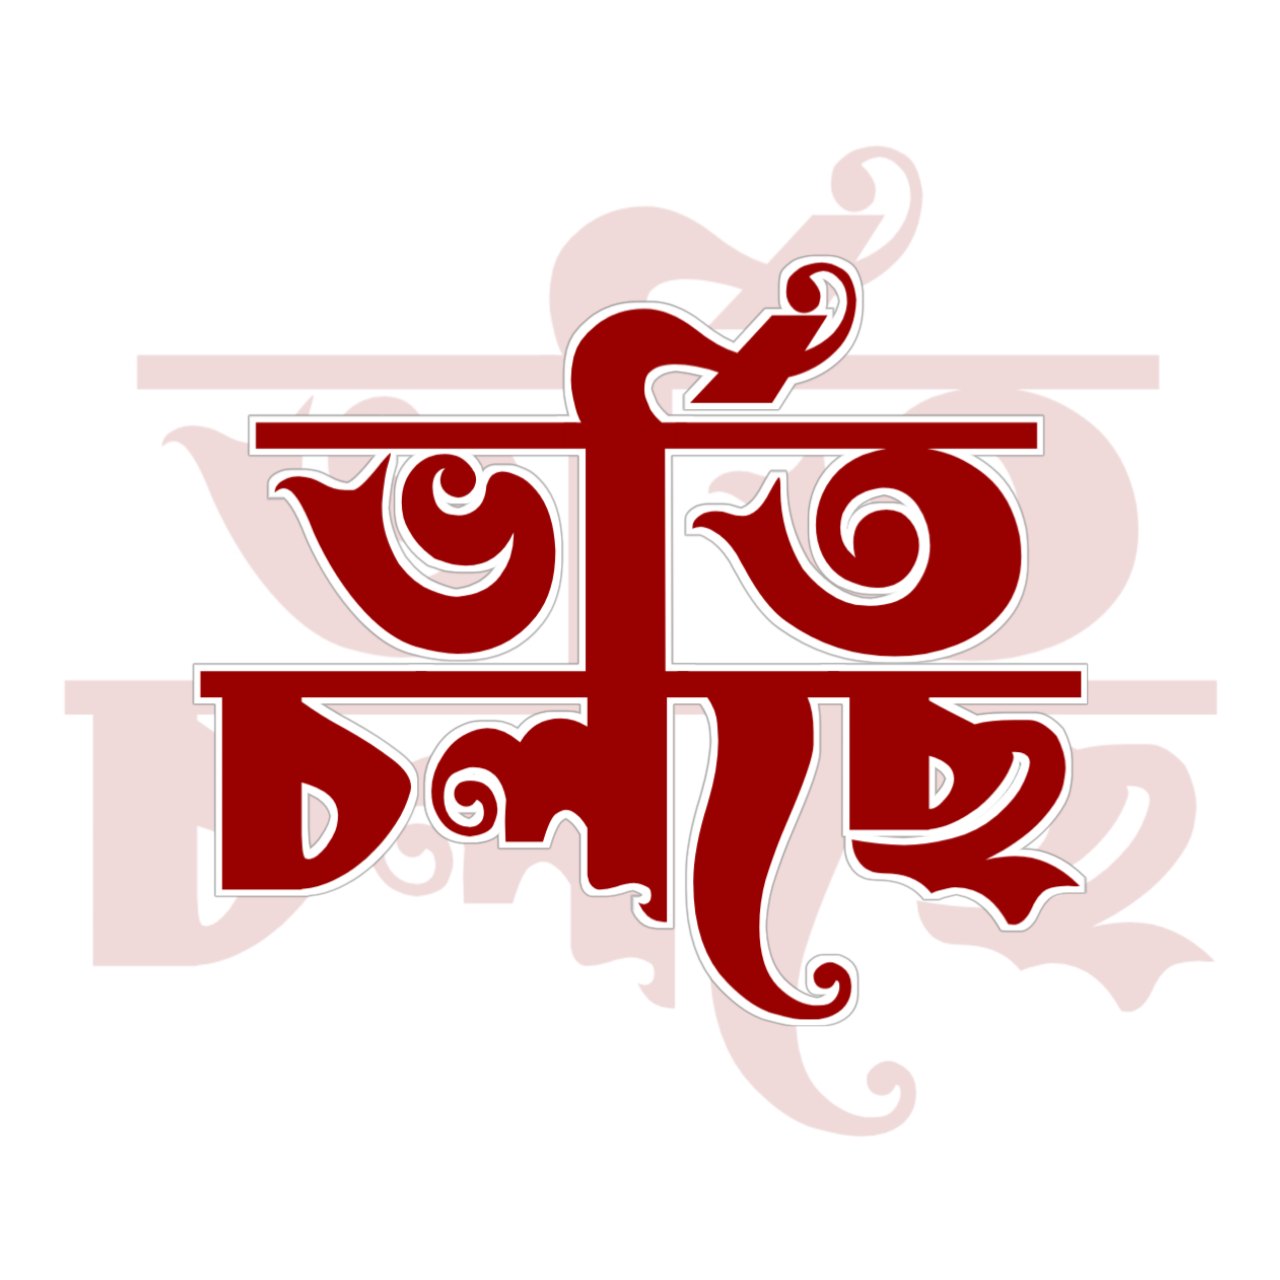 ভর্তি চলছে টাইপোগ্রাফি । Bangla Typhography PNG